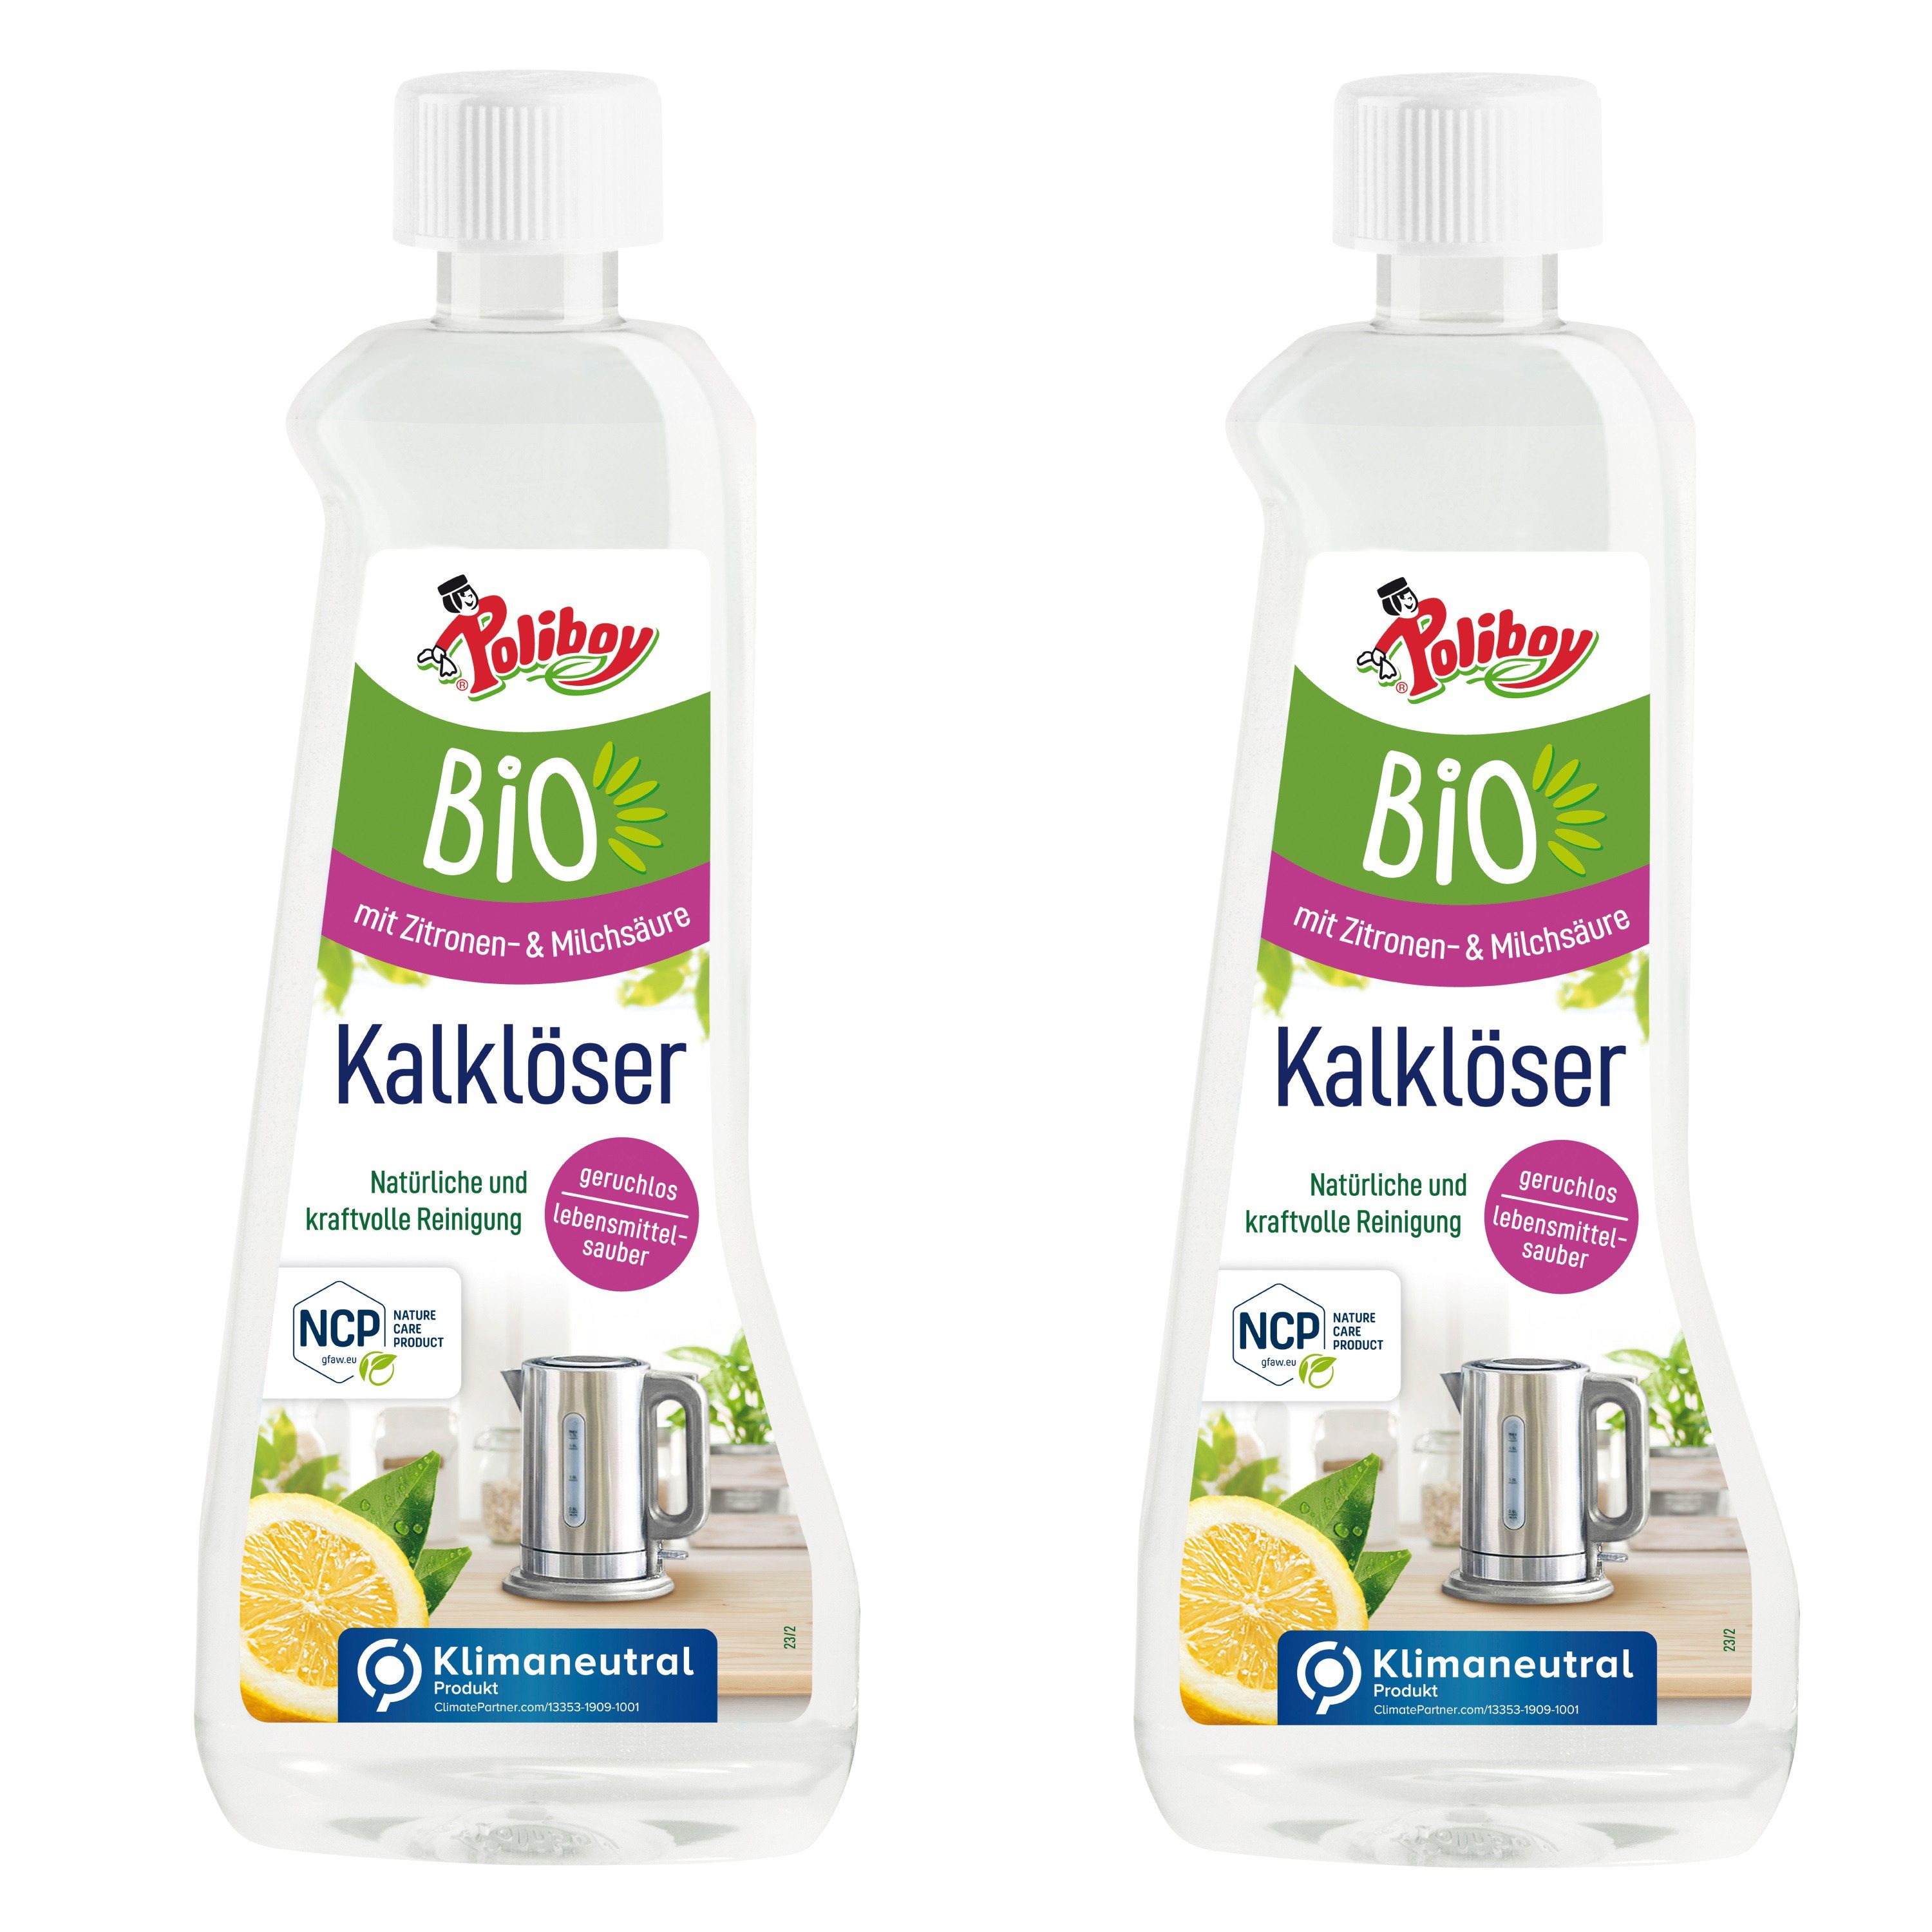 poliboy - 1 Liter - Bio Kalklöser (für ein hygienisches & natürliches Entkalken - Made in Germany)